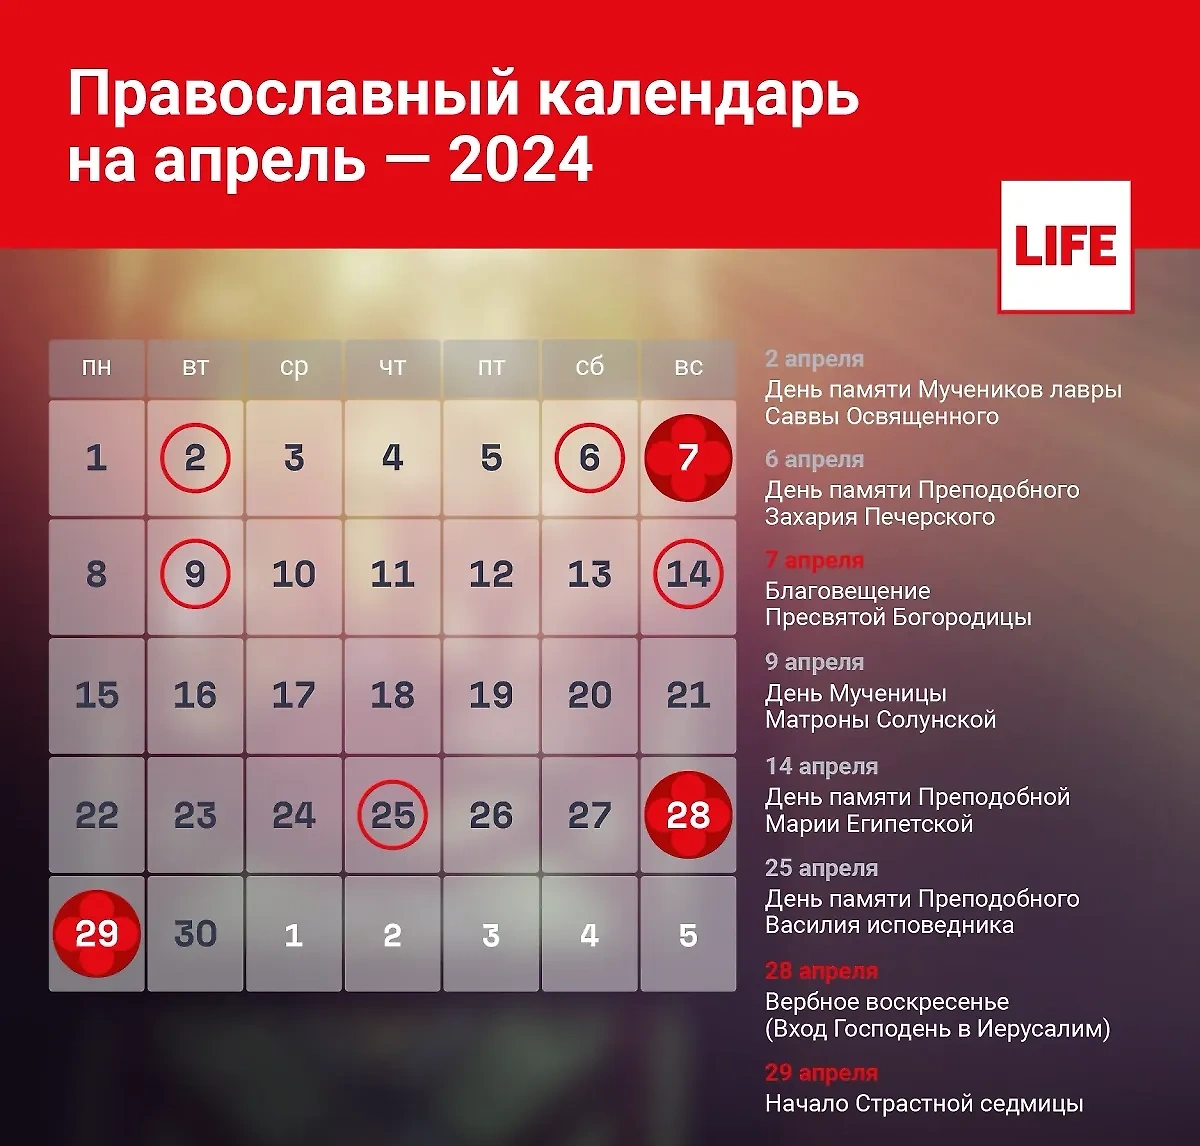 Какие церковные праздники отмечаются в апреле, подскажет православный календарь. Инфографика © Life.ru 